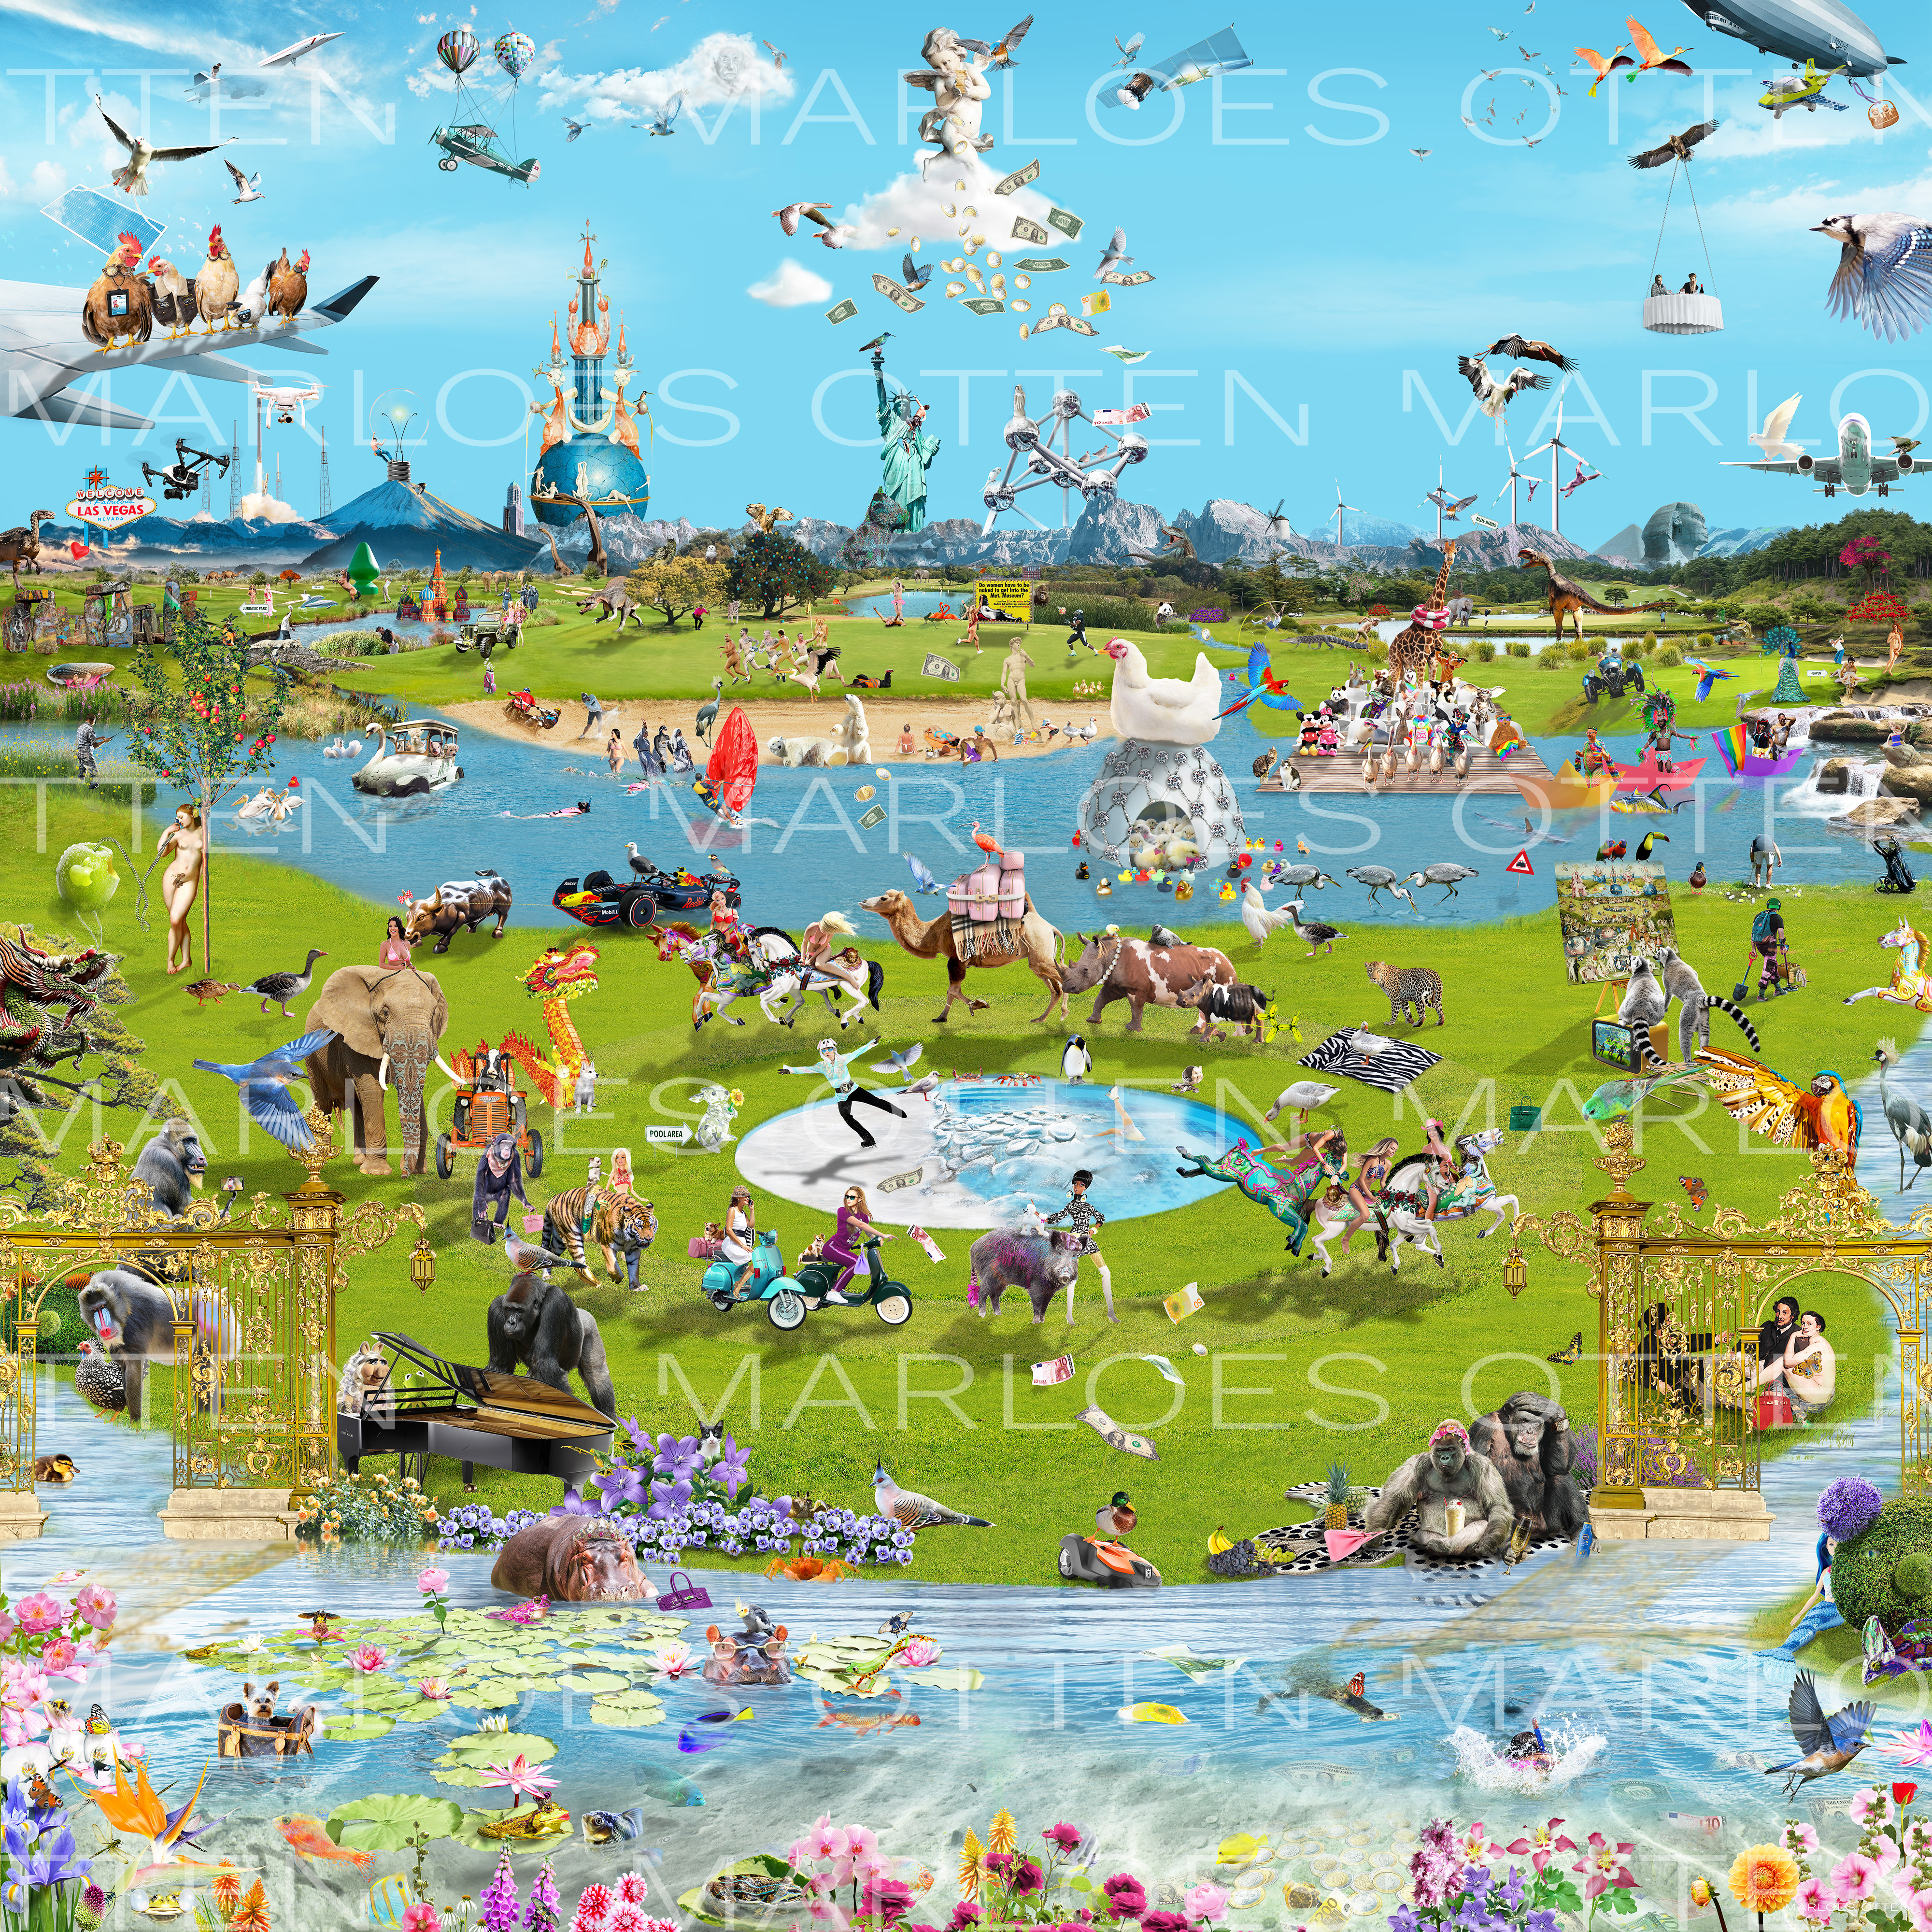 digitaal kunstwerk van Marloes Otten maar de Tuin der Lusten van Jheronimus Bosch. Een moderne versie van het klassieke werk, waarin tal van dieren en figuren figureren in een denkbeeldig landschap met meren, bergen, golfbanen, en nog veel meer. Hoofdkleuren: luchtblauw en heldergroen.